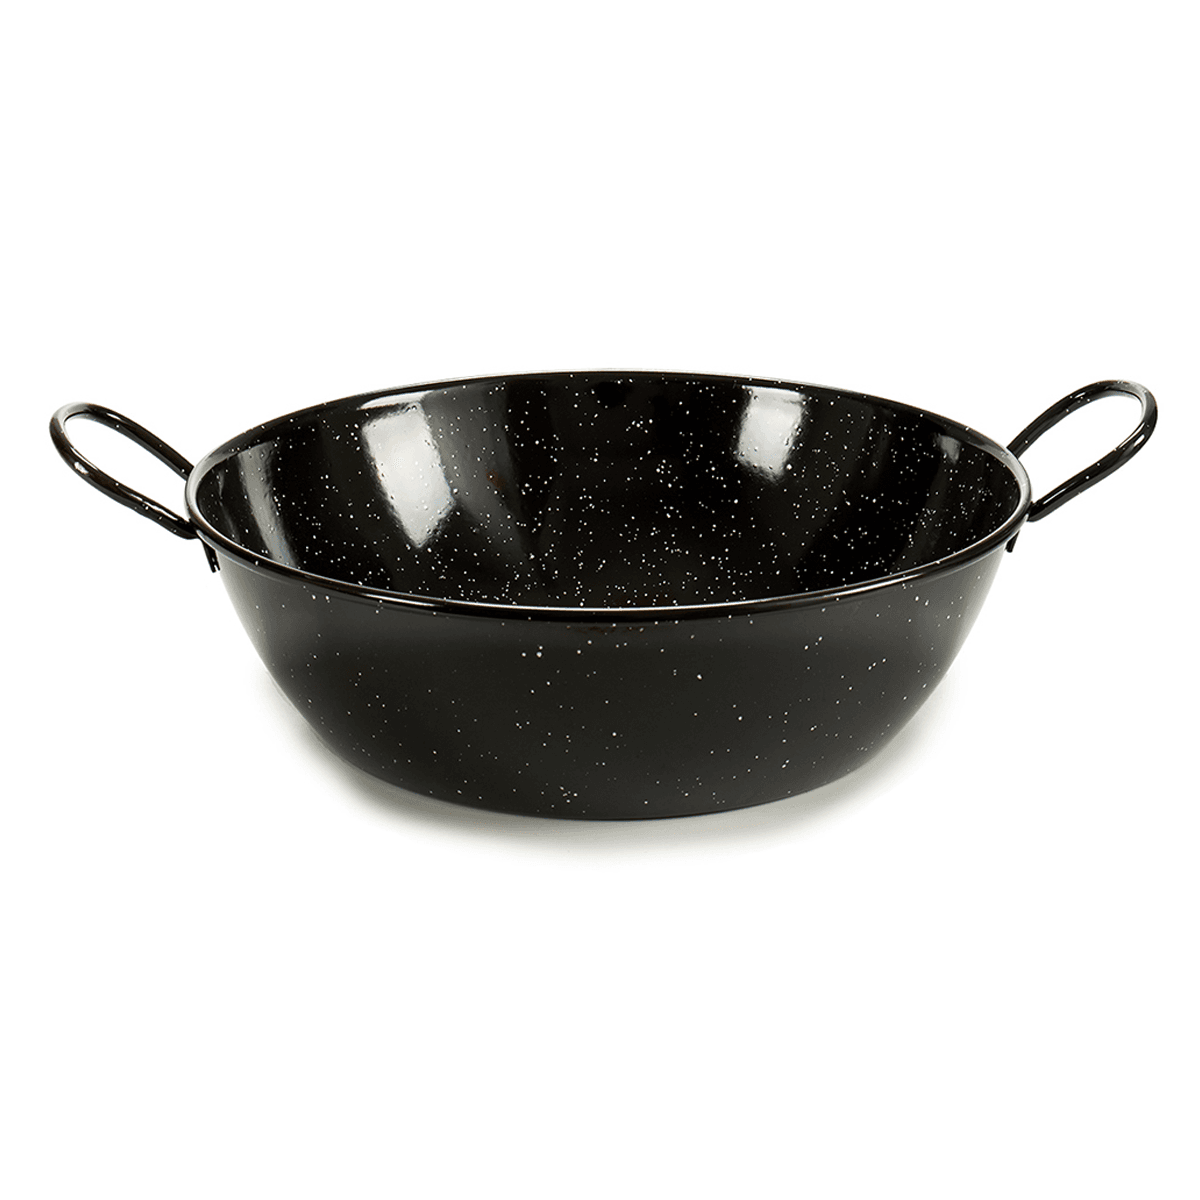 La Dehesa Black Deep Enameled Steel Frying Pan 28 cm